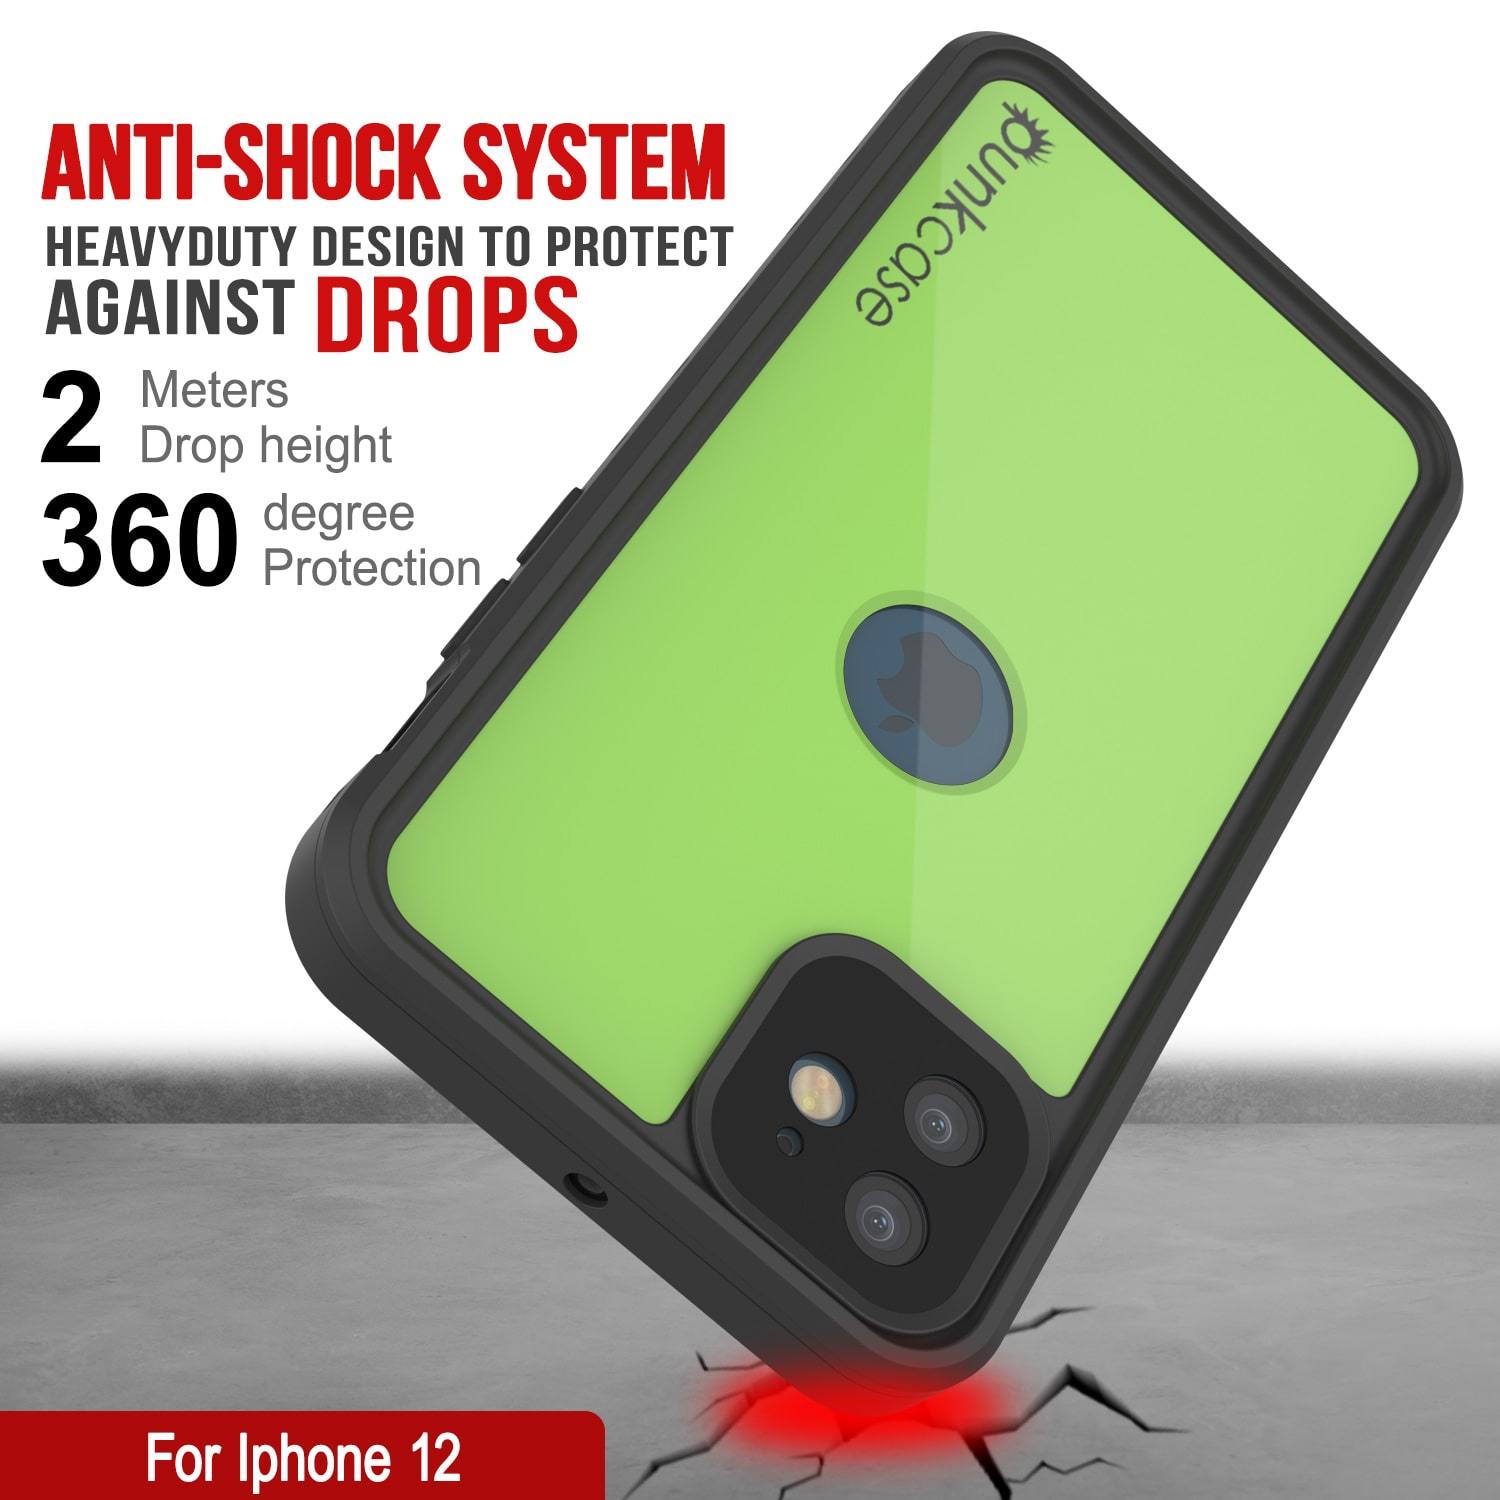 iPhone 12 Waterproof IP68 Case, Punkcase [Light green] [StudStar Series] [Slim Fit] [Dirtproof]